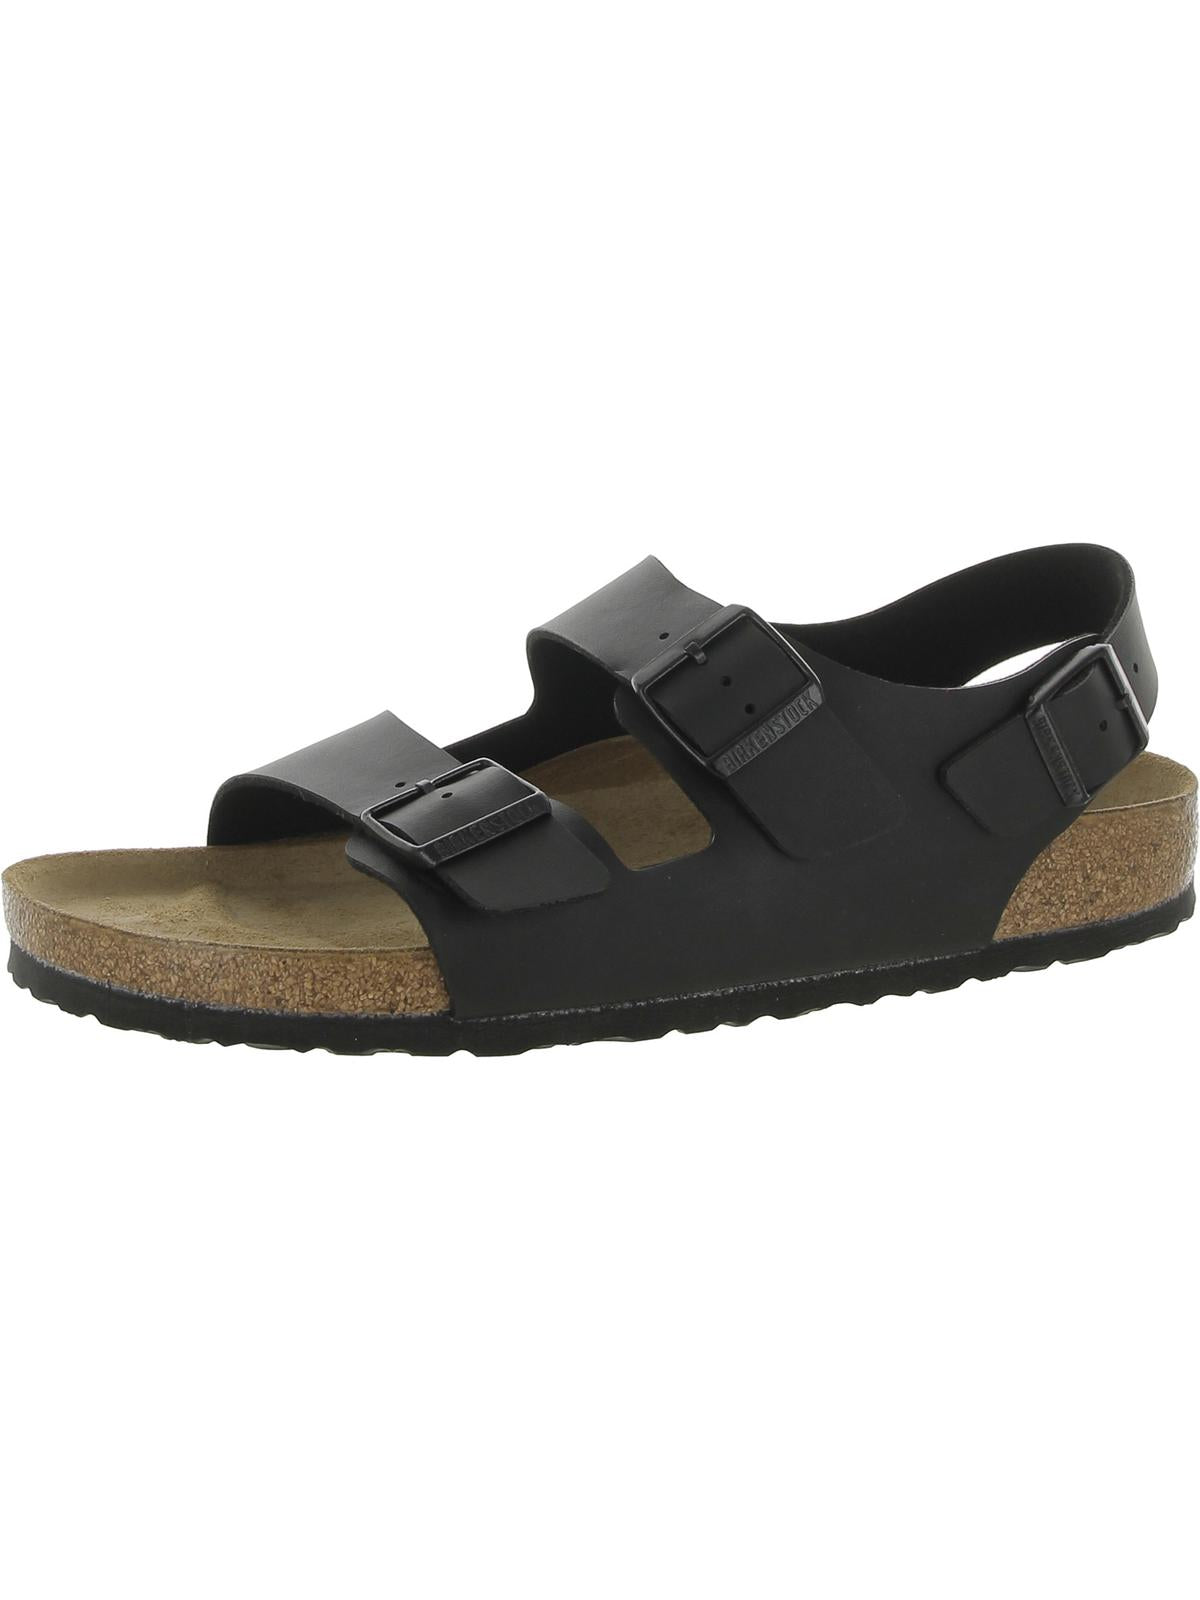 Shop Birkenstock Mens Leather Slip On Slide Sandals In Black